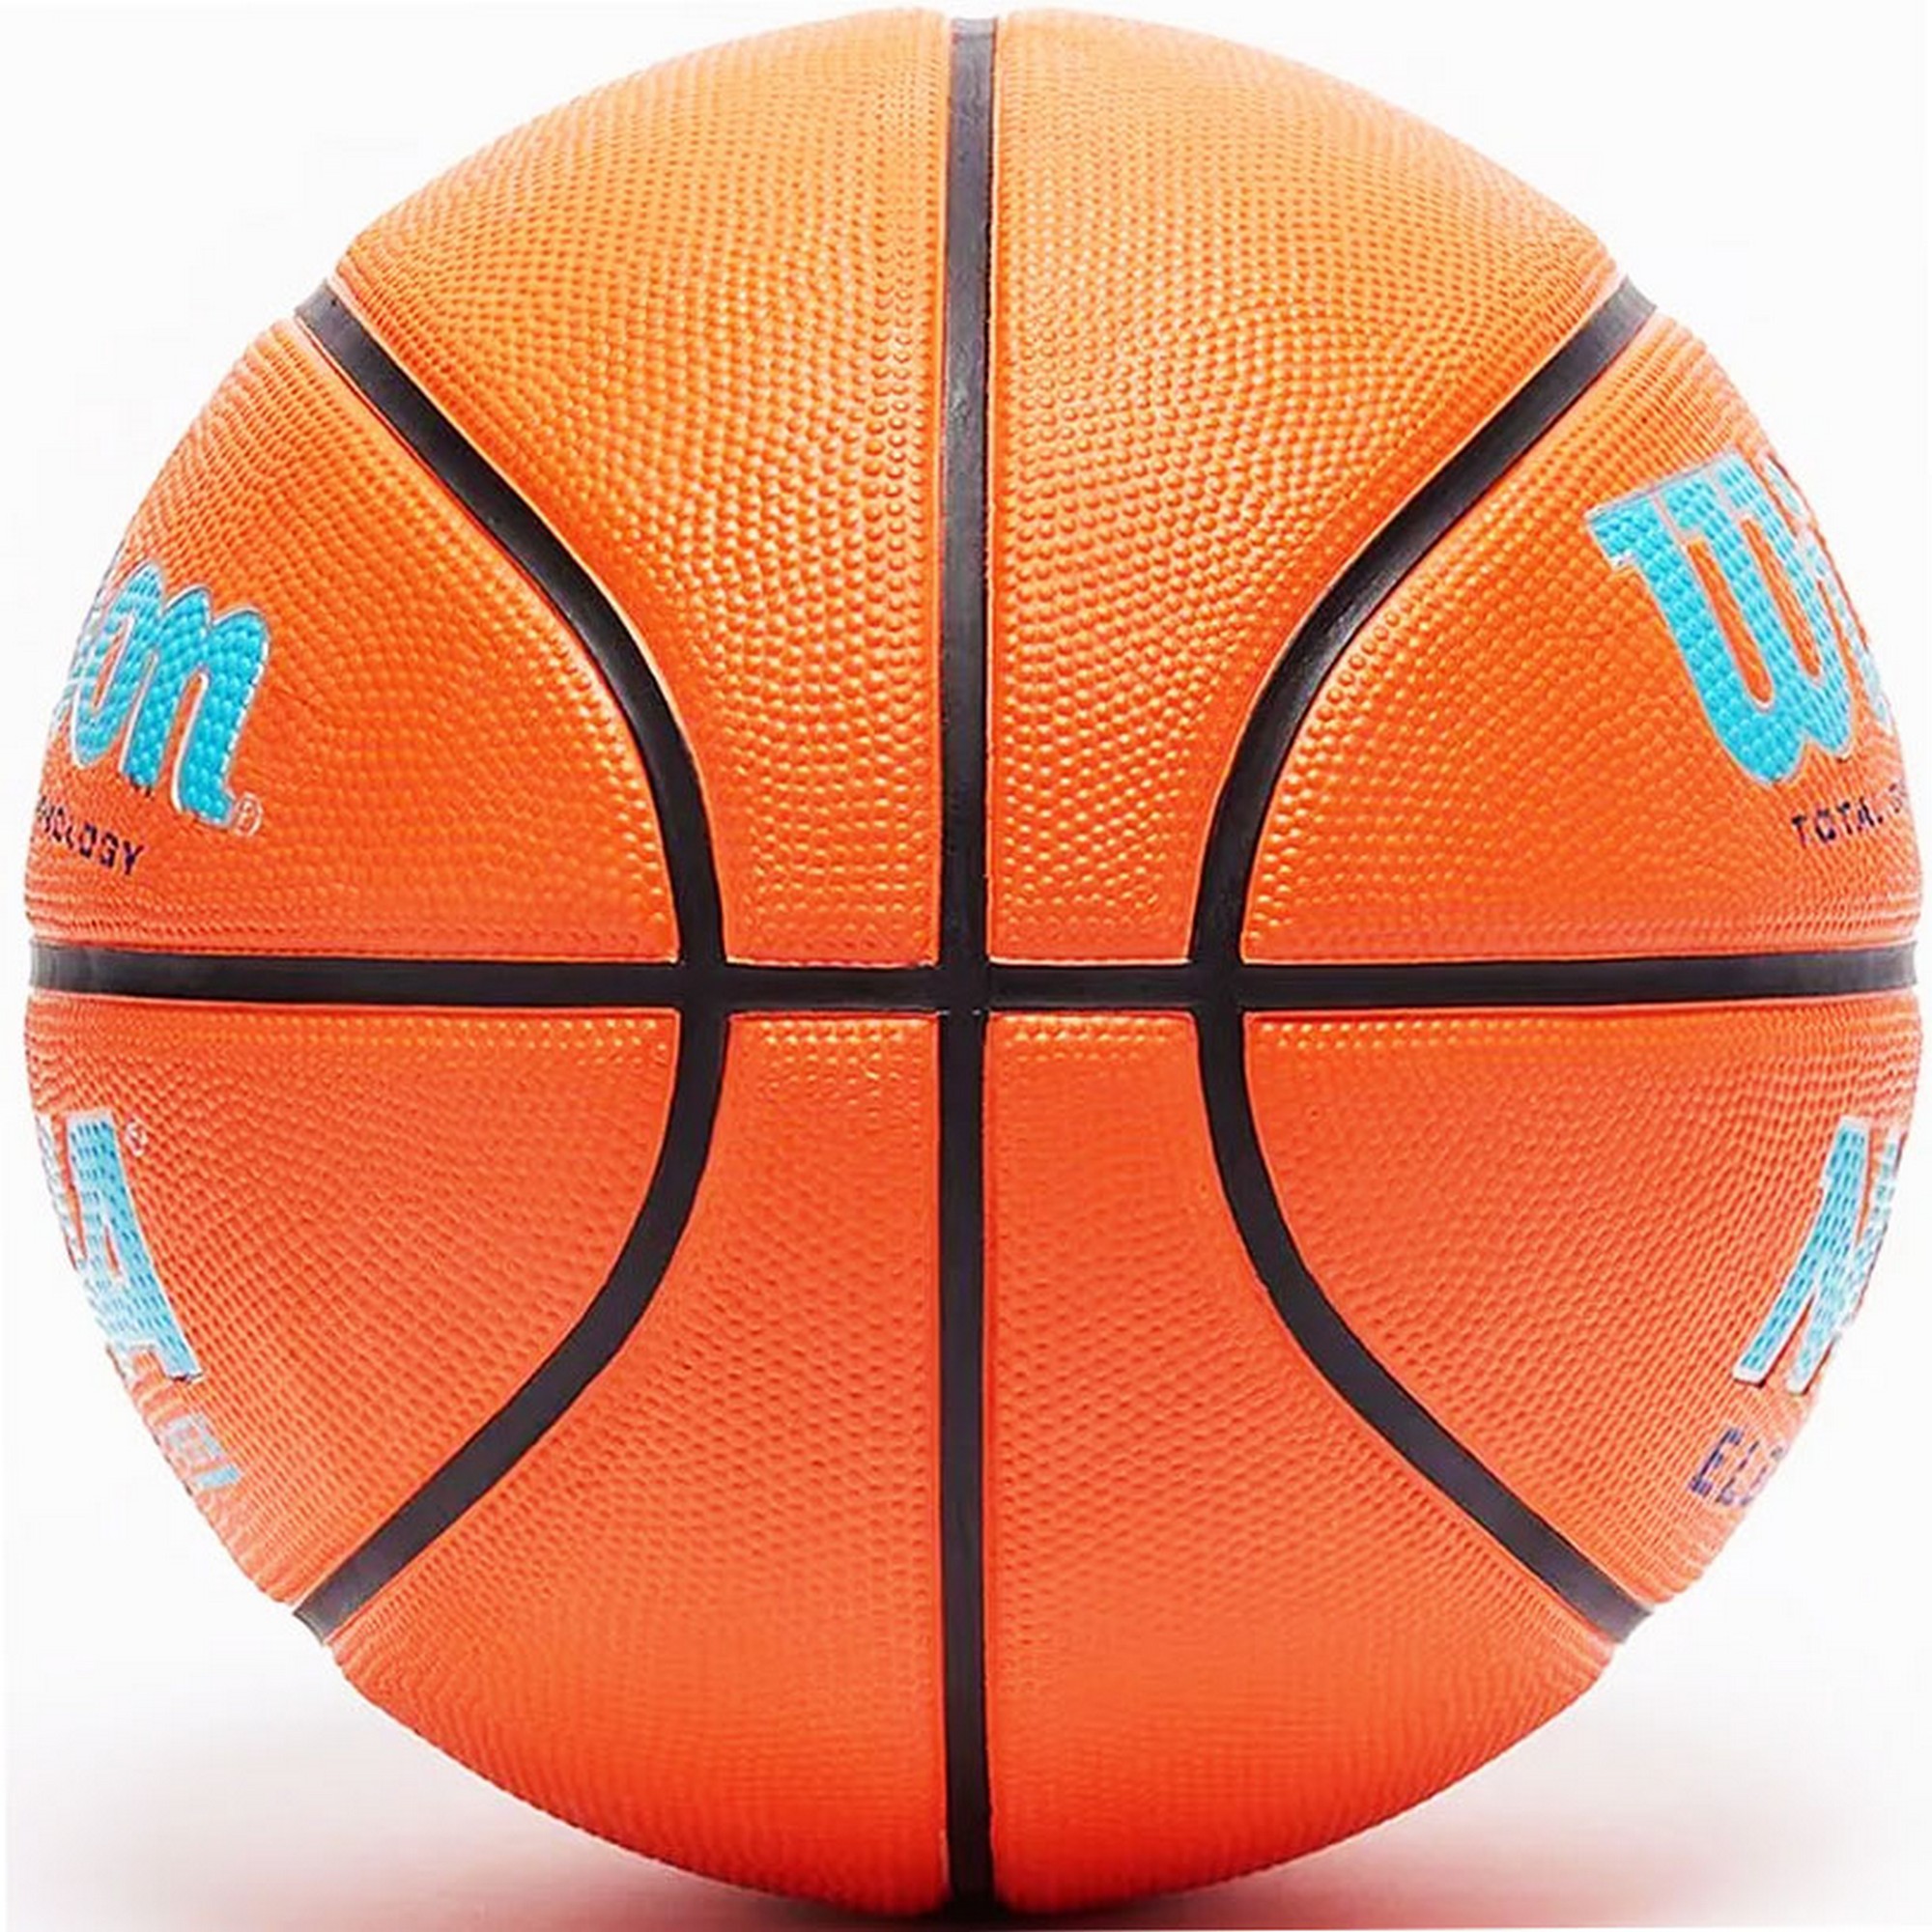 Мяч баскетбольный Wilson NCAA Elevate VTX WZ3006802XB5 р.5 2000_2000